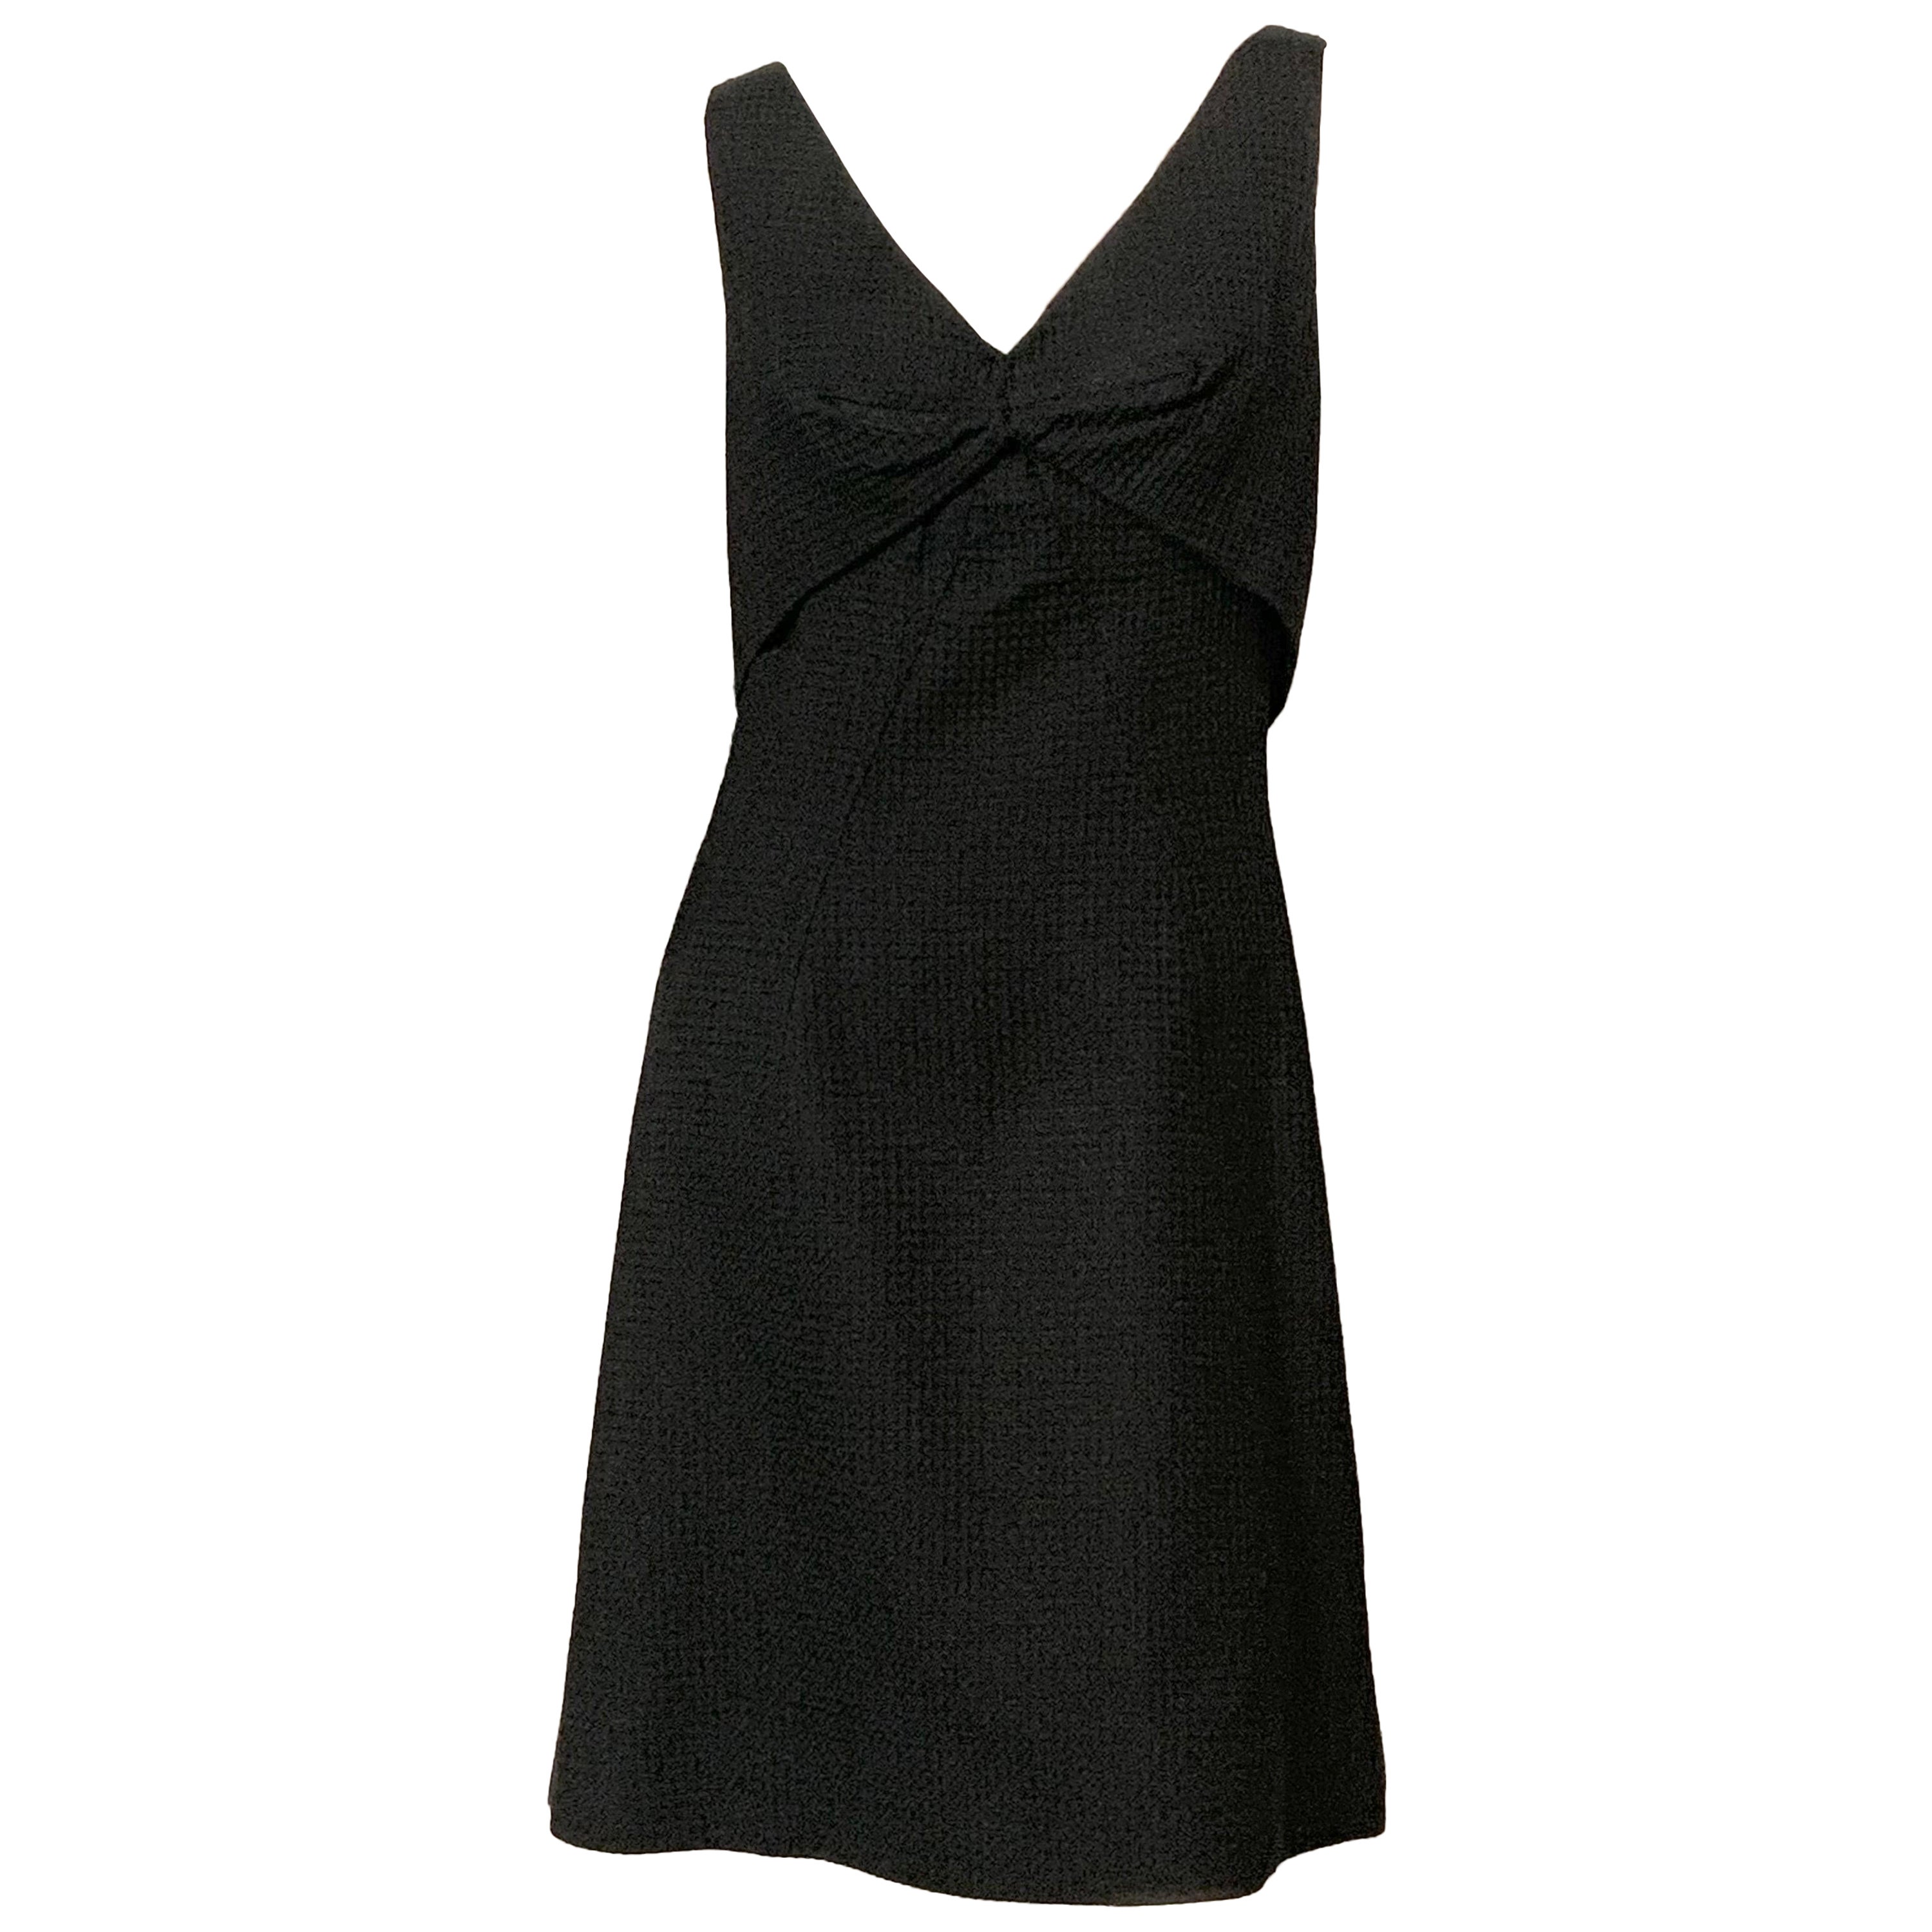 Estevez Black Cotton Pique Dress